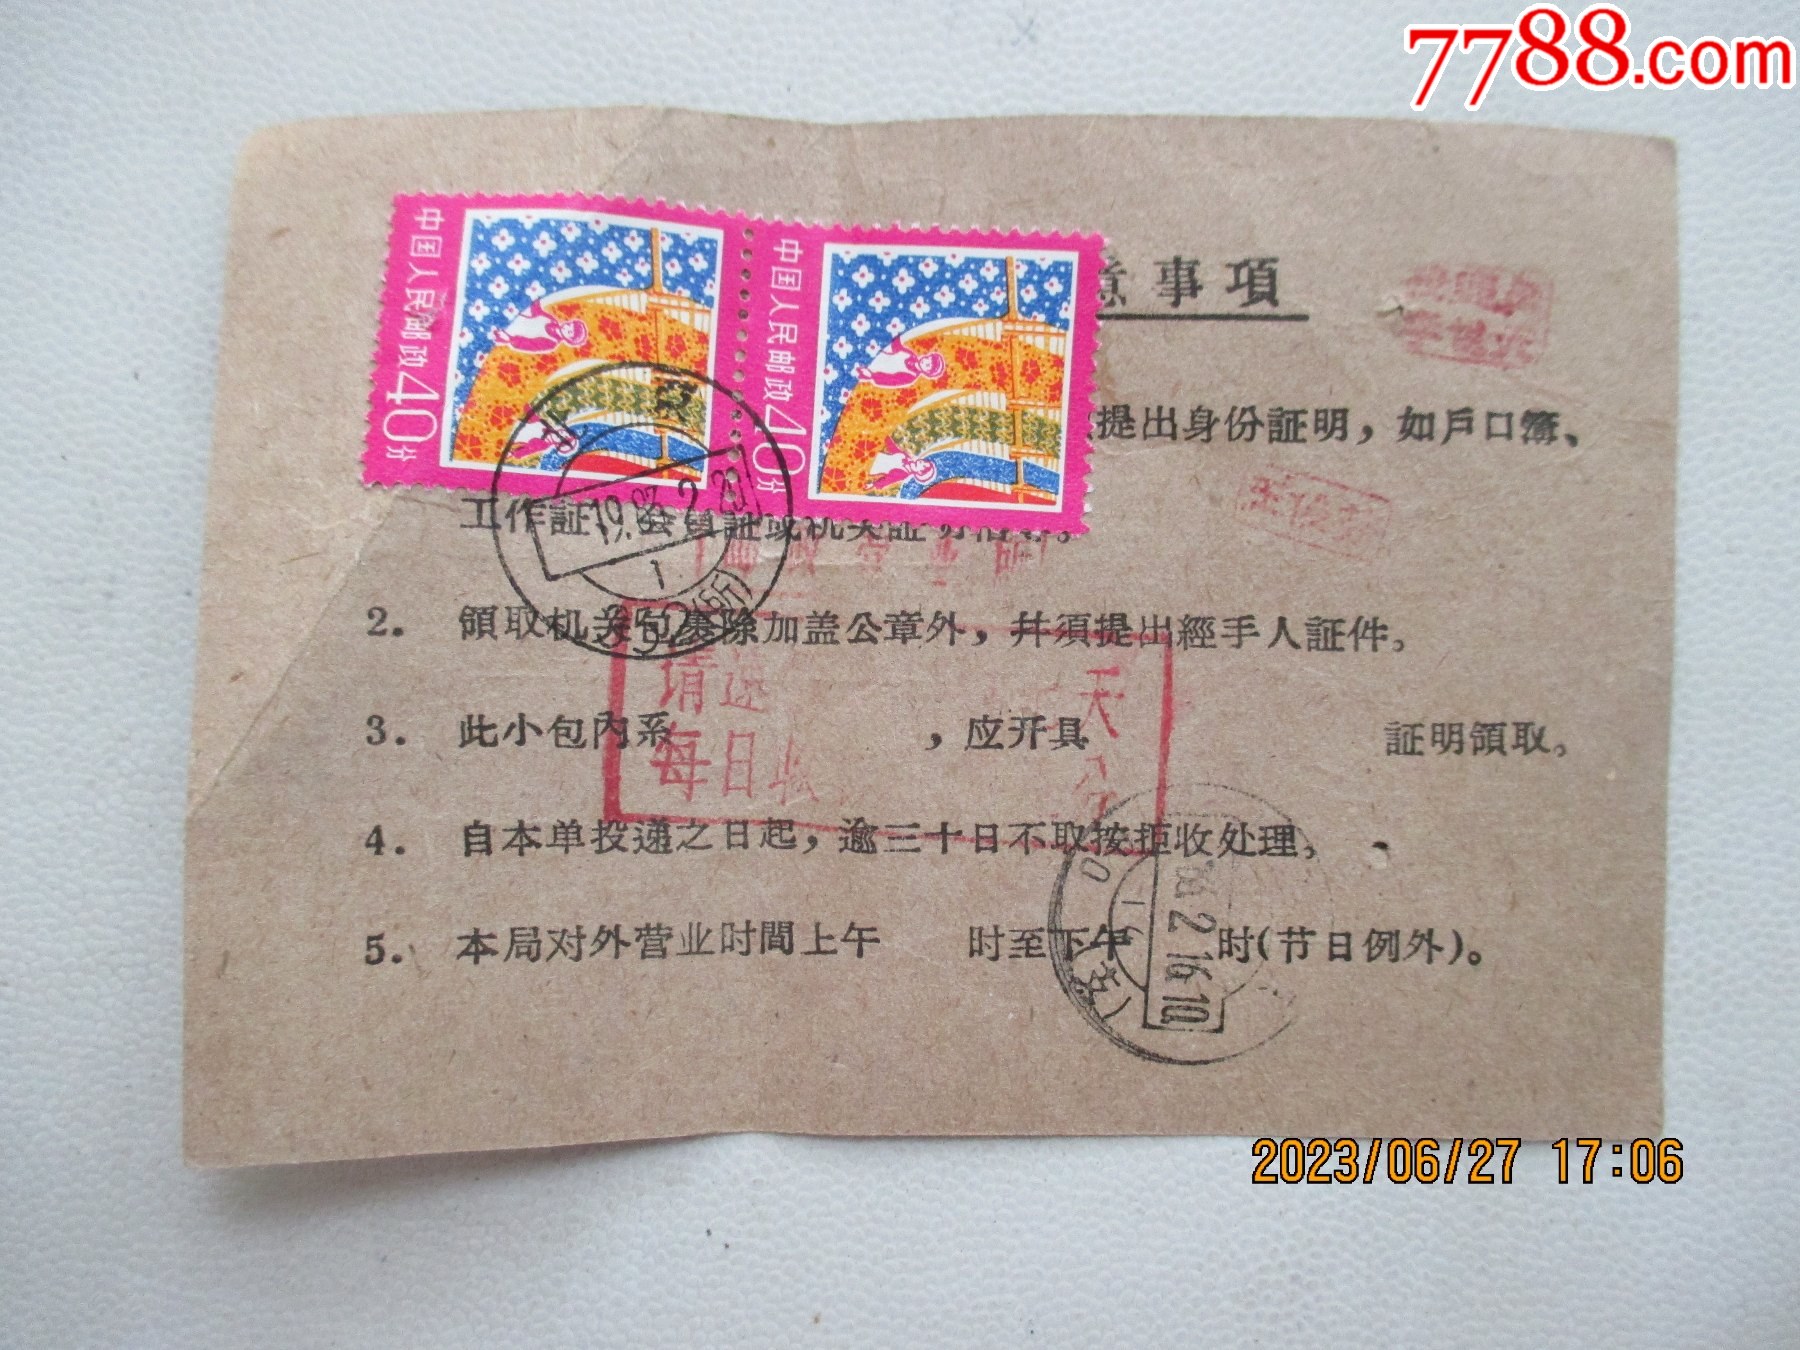 1956年中国人民邮政国内包裏,小包详情单,手抄购八分邮票单据各一份-价格:98元-se83945704-其他单据/函/表-零售-7788收藏 ...